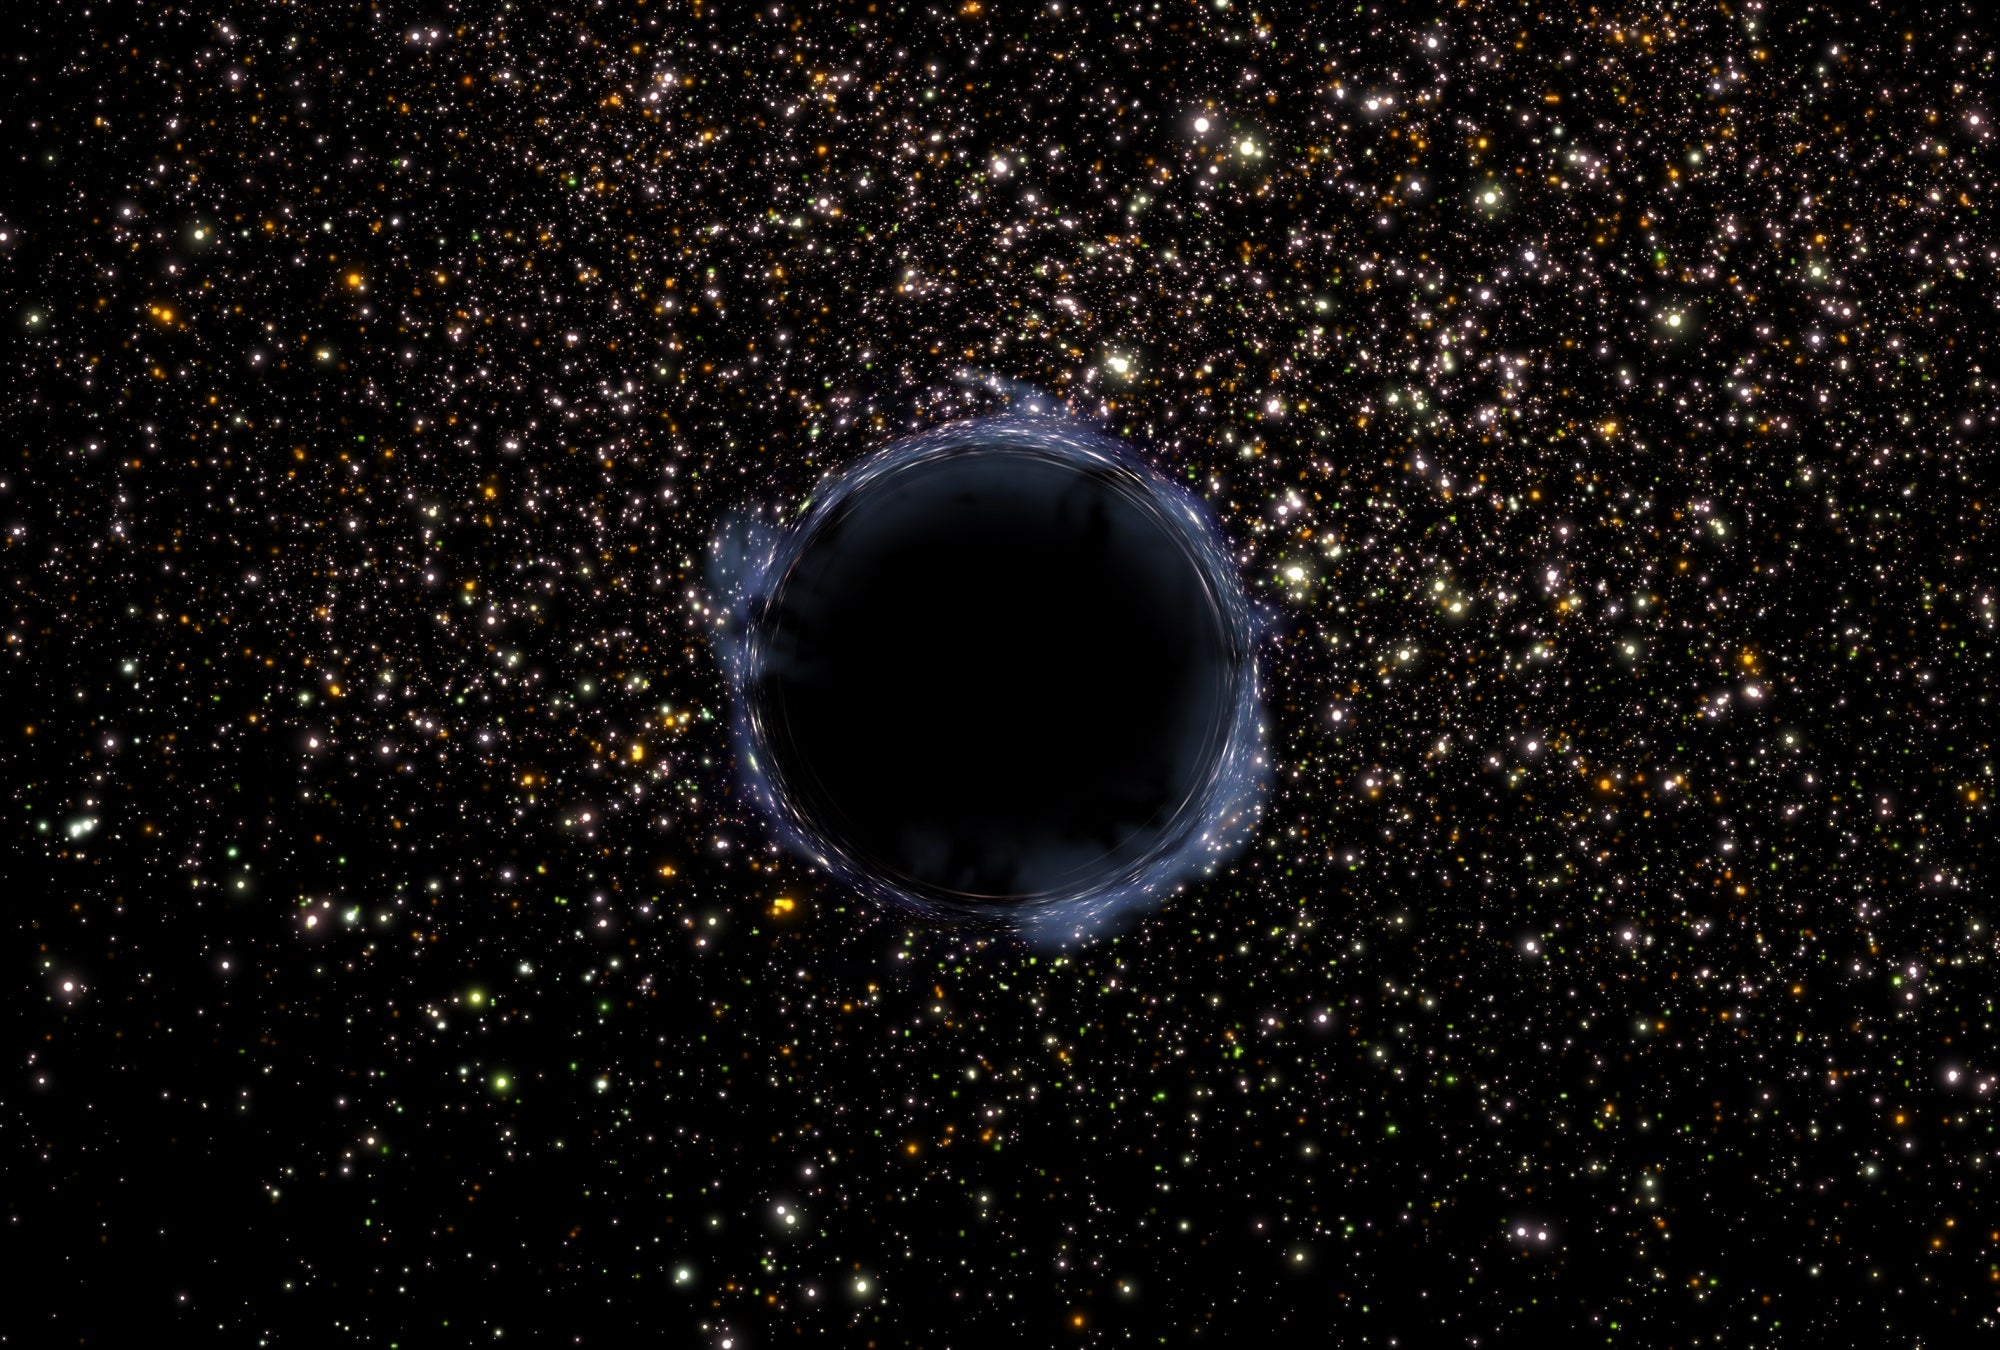 Los “agujeros negros rebeldes” podrían no ser ni “agujeros negros rebeldes” ni “agujeros negros”.  En las profundidades insondables del espacio, existe un enigma que desafía las nociones convencionales sobre los agujeros negros. Los científicos, intrigados por estos misteriosos fenómenos cósmicos, han comenzado a cuestionar la terminología comúnmente aceptada. ¿Son realmente "agujeros negros rebeldes"? ¿Son, de hecho, agujeros negros en absoluto?